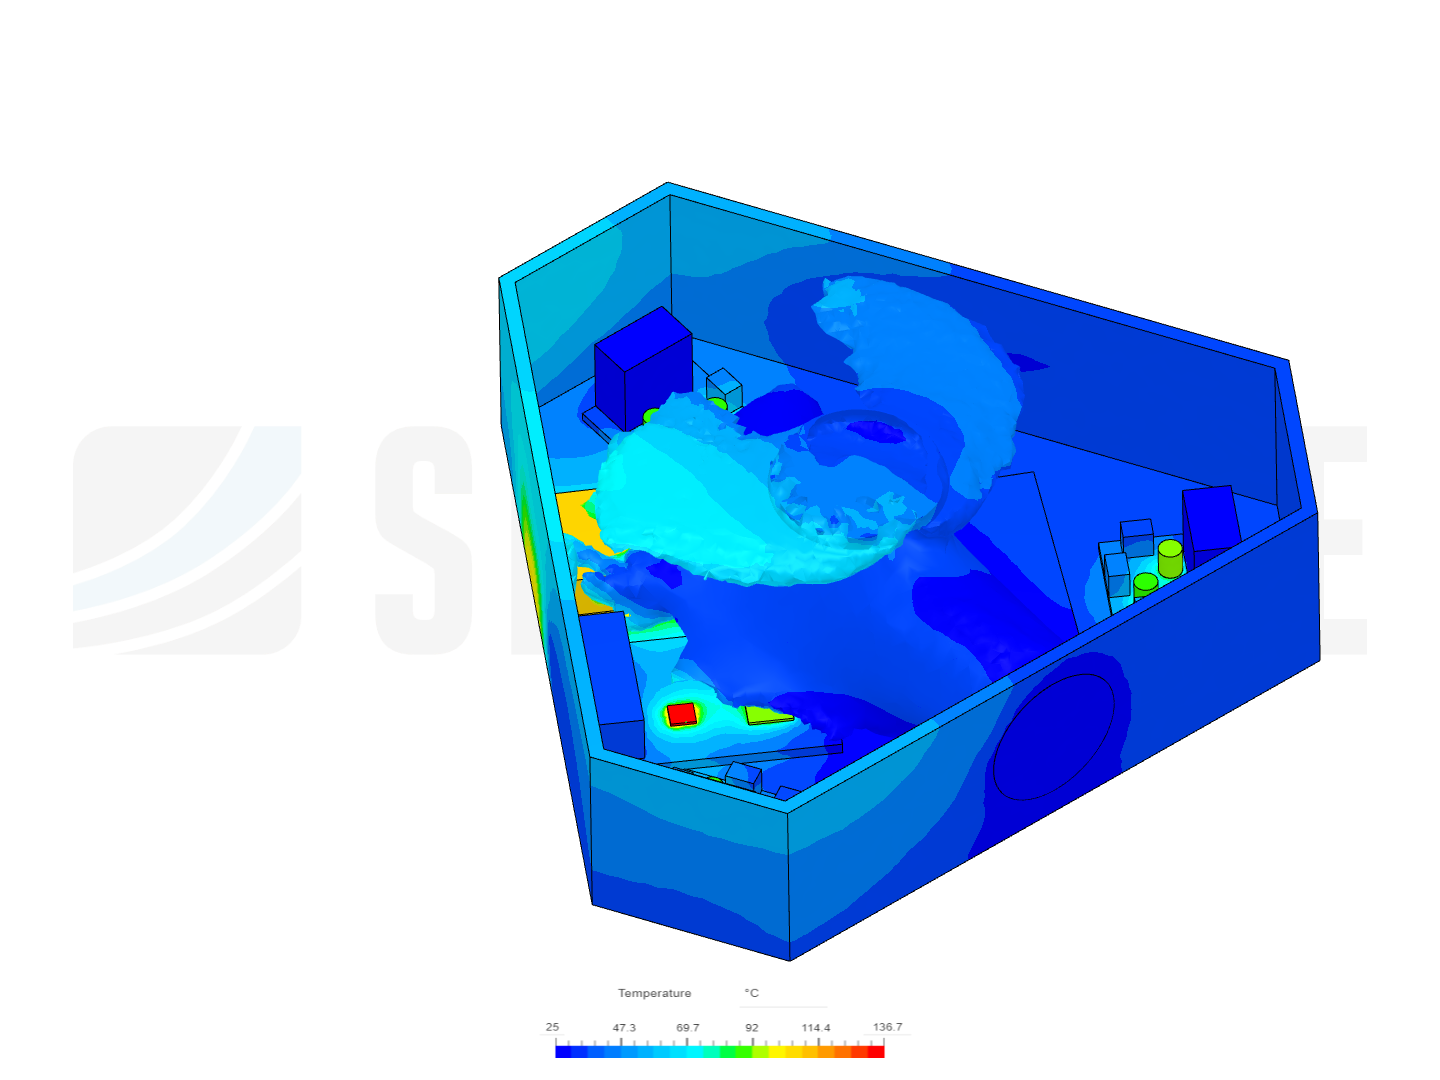 Thermal Analysis of Stewart Platform image